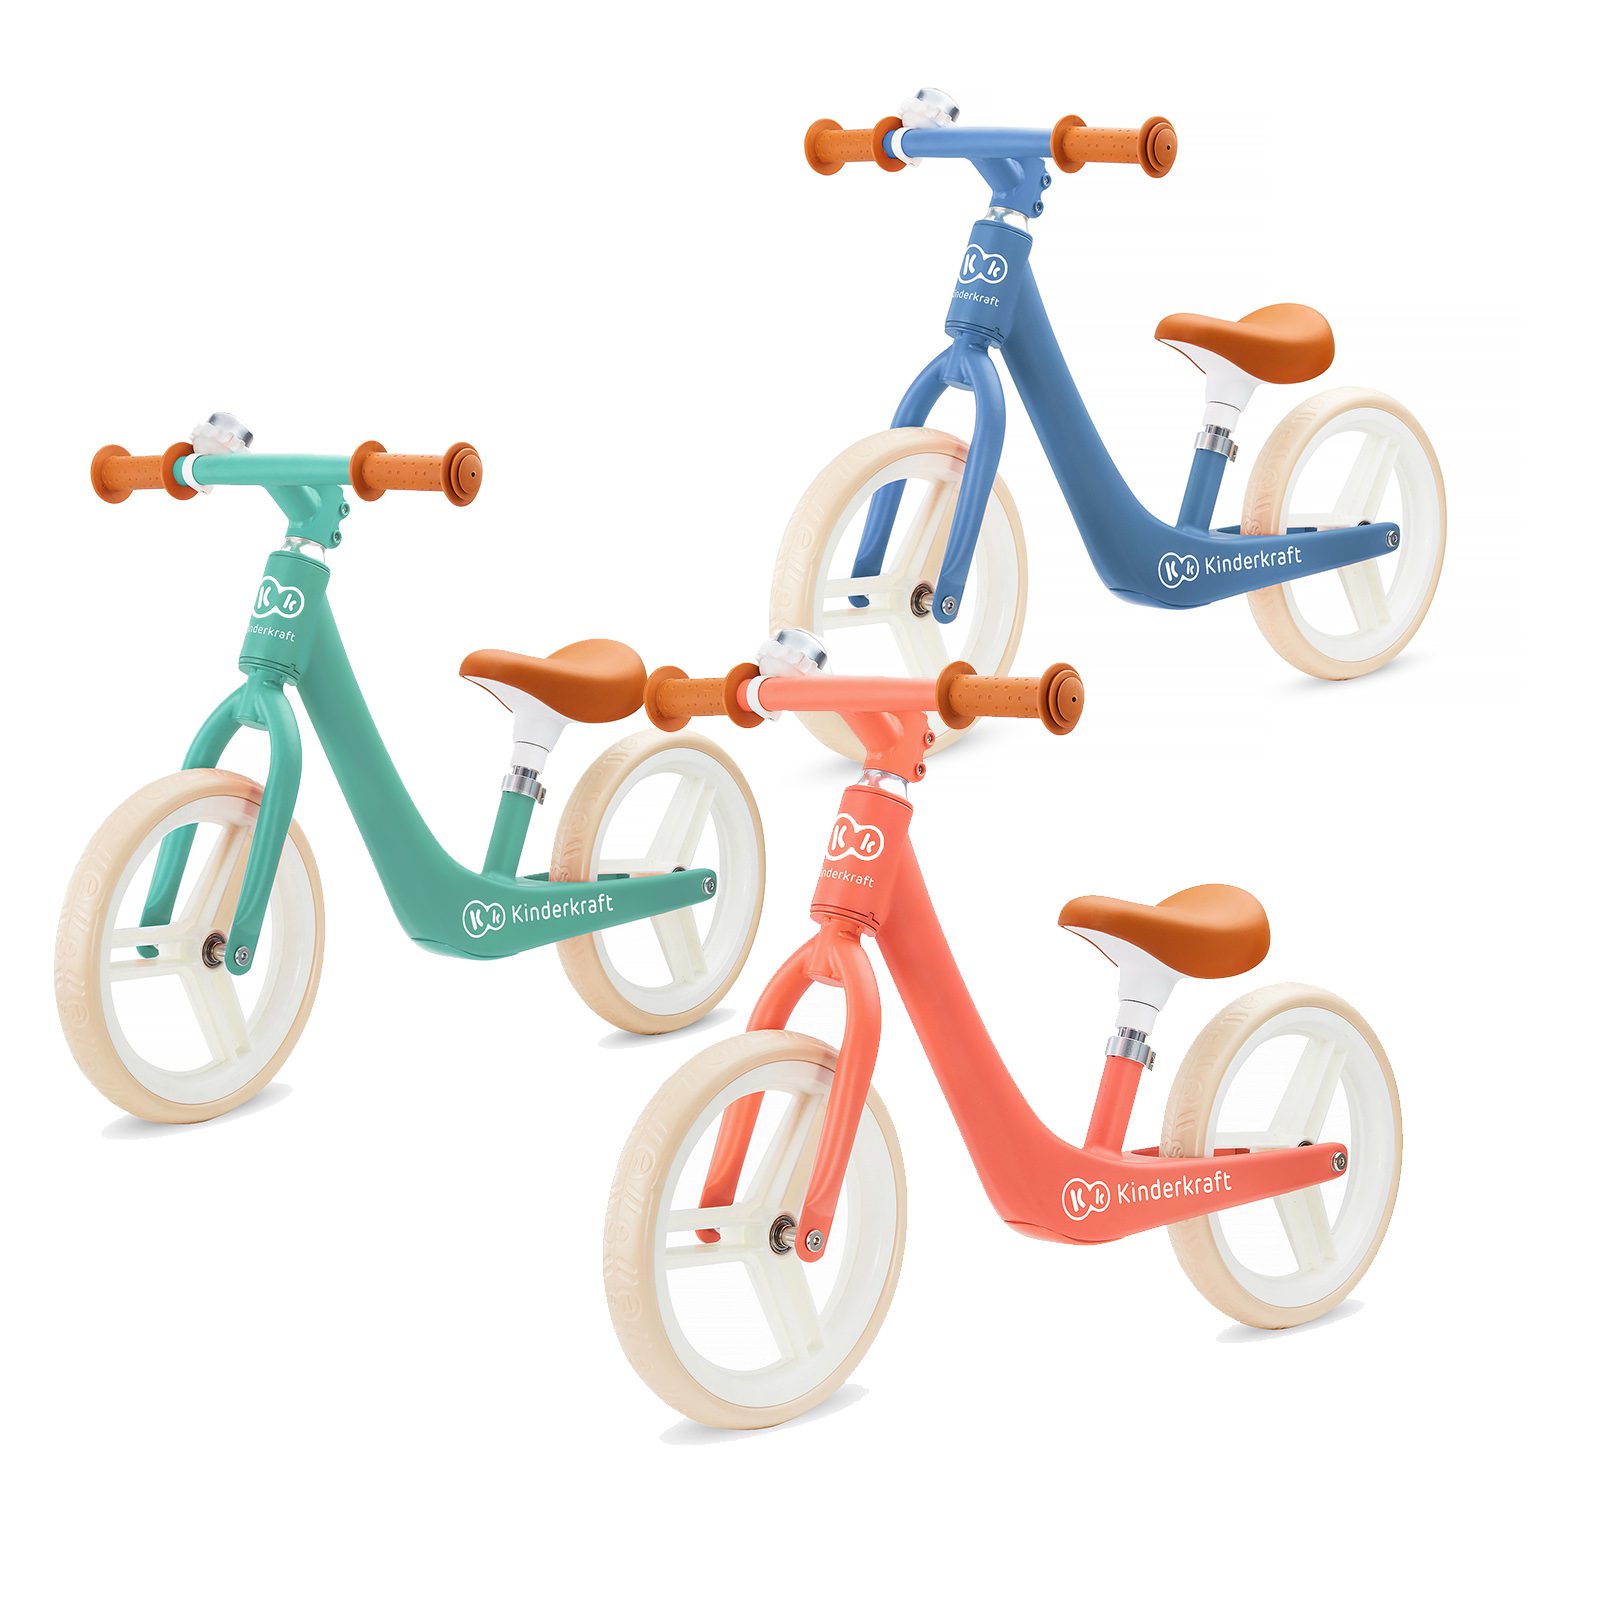 Rápida, ligera y manejable: así, en pocas palabras, es la bicicleta de equilibrio FLY PLUS